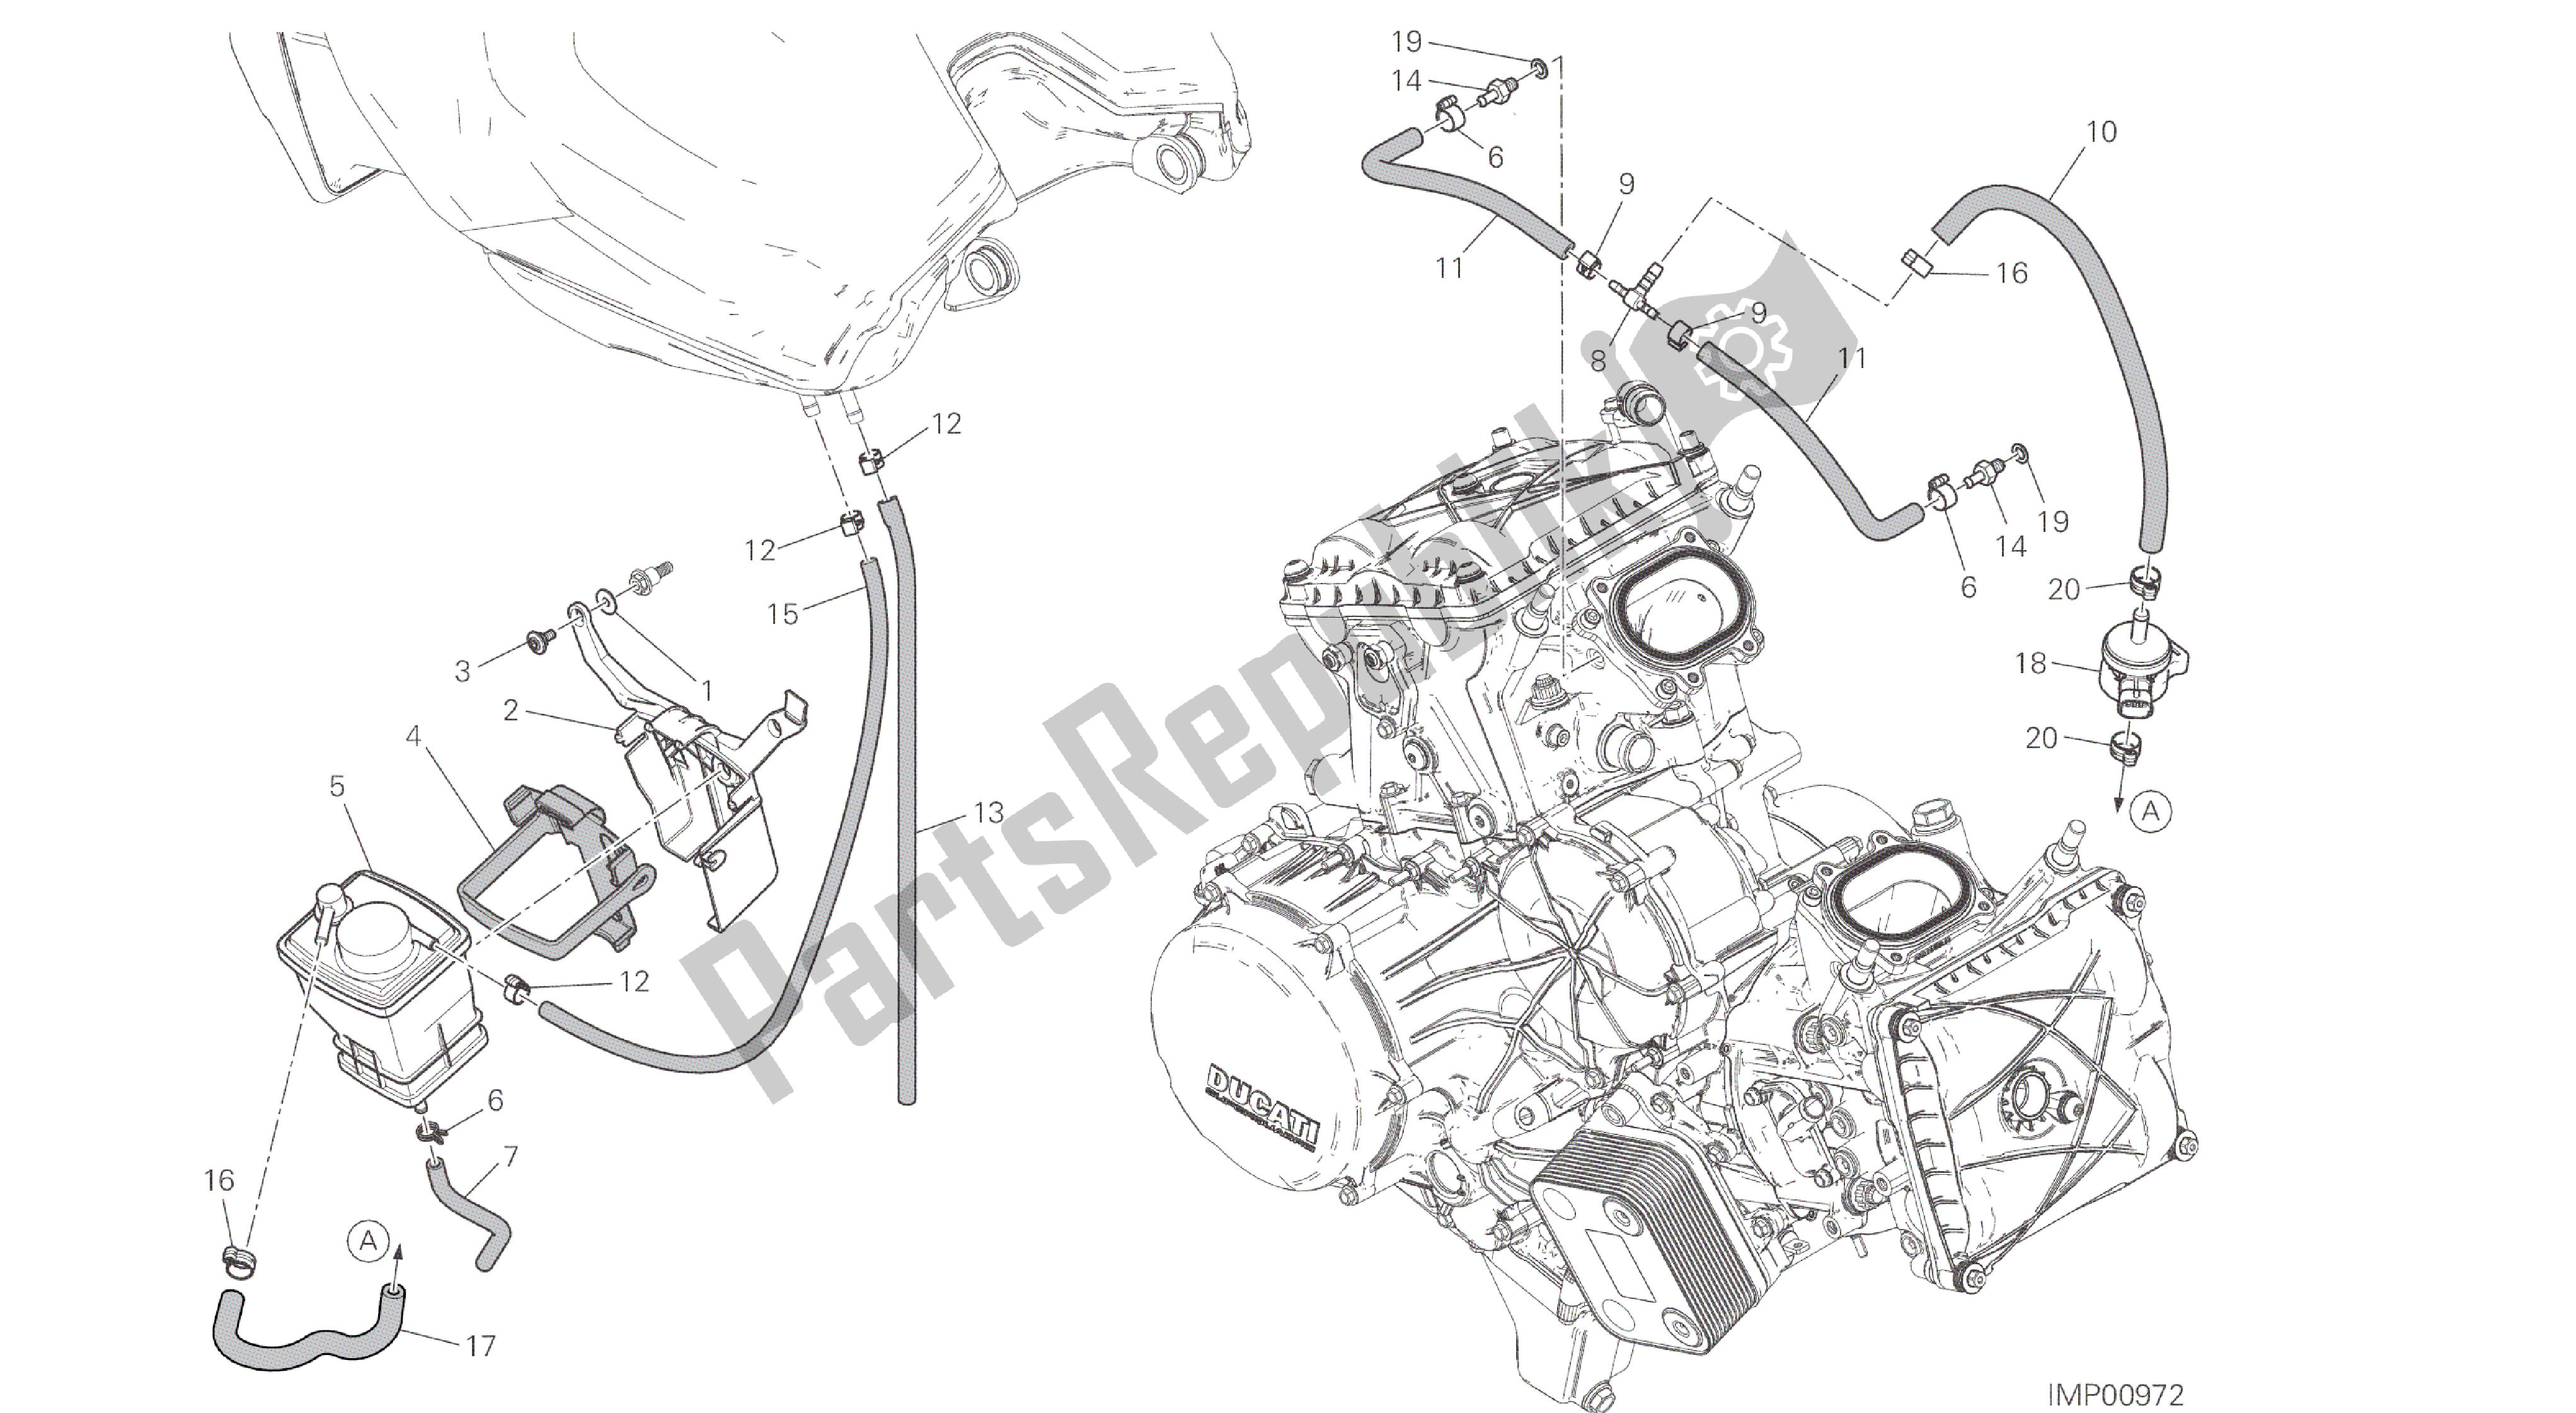 Todas as partes de Desenho 035 - Filtro De Caixa [mod: 959. 959 Aws] Quadro De Grupo do Ducati Panigale 959 2016